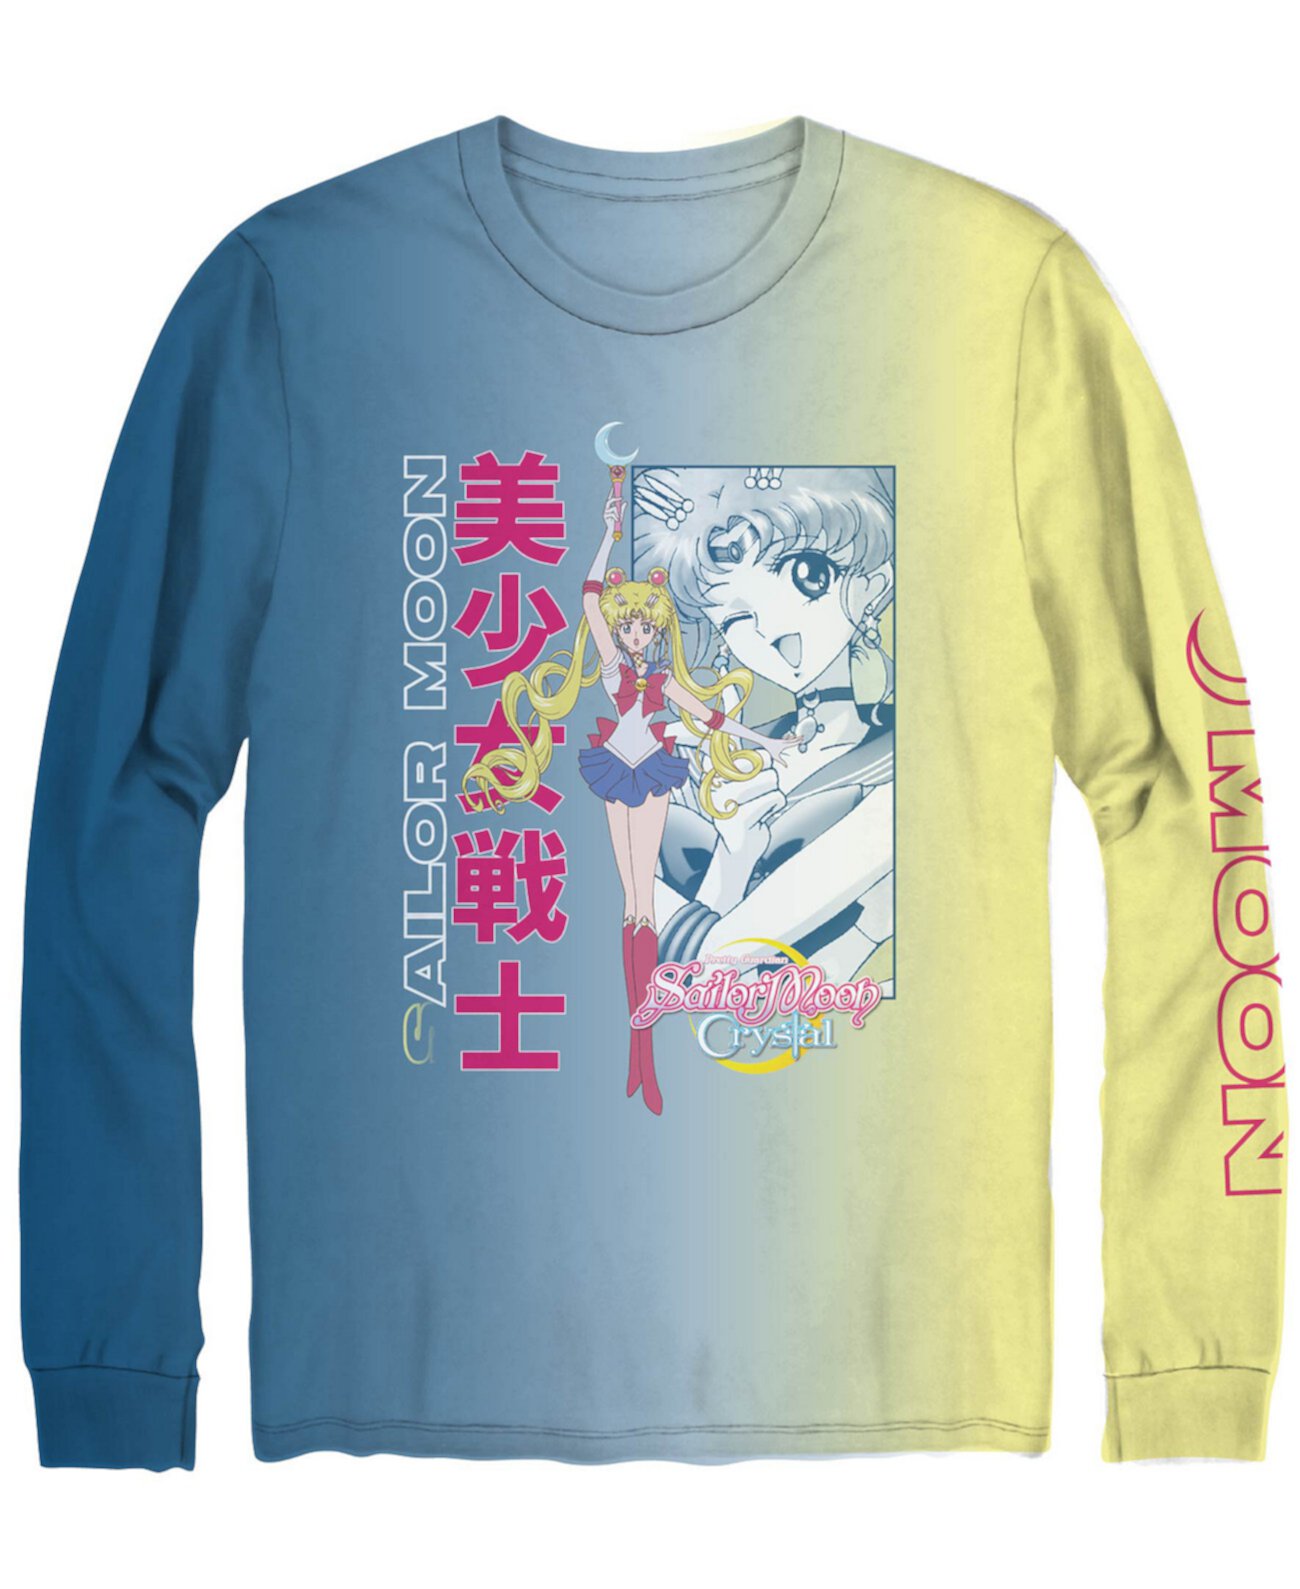 Мужская футболка с длинным рукавом и рисунком Sailor Moon Crystal Hybrid